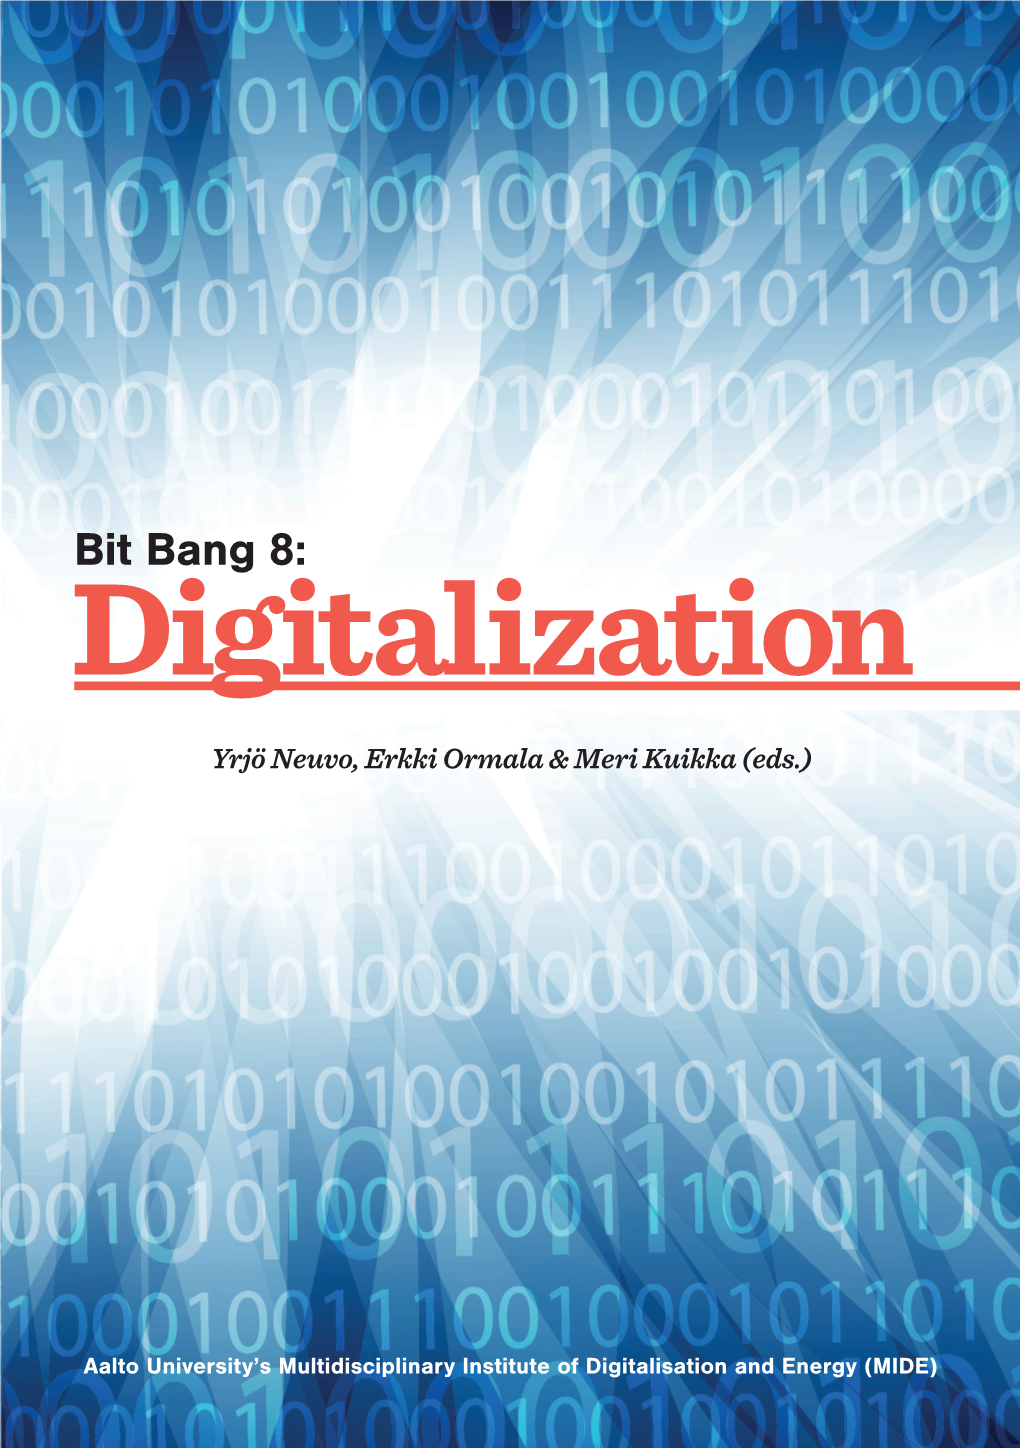 Digitalization